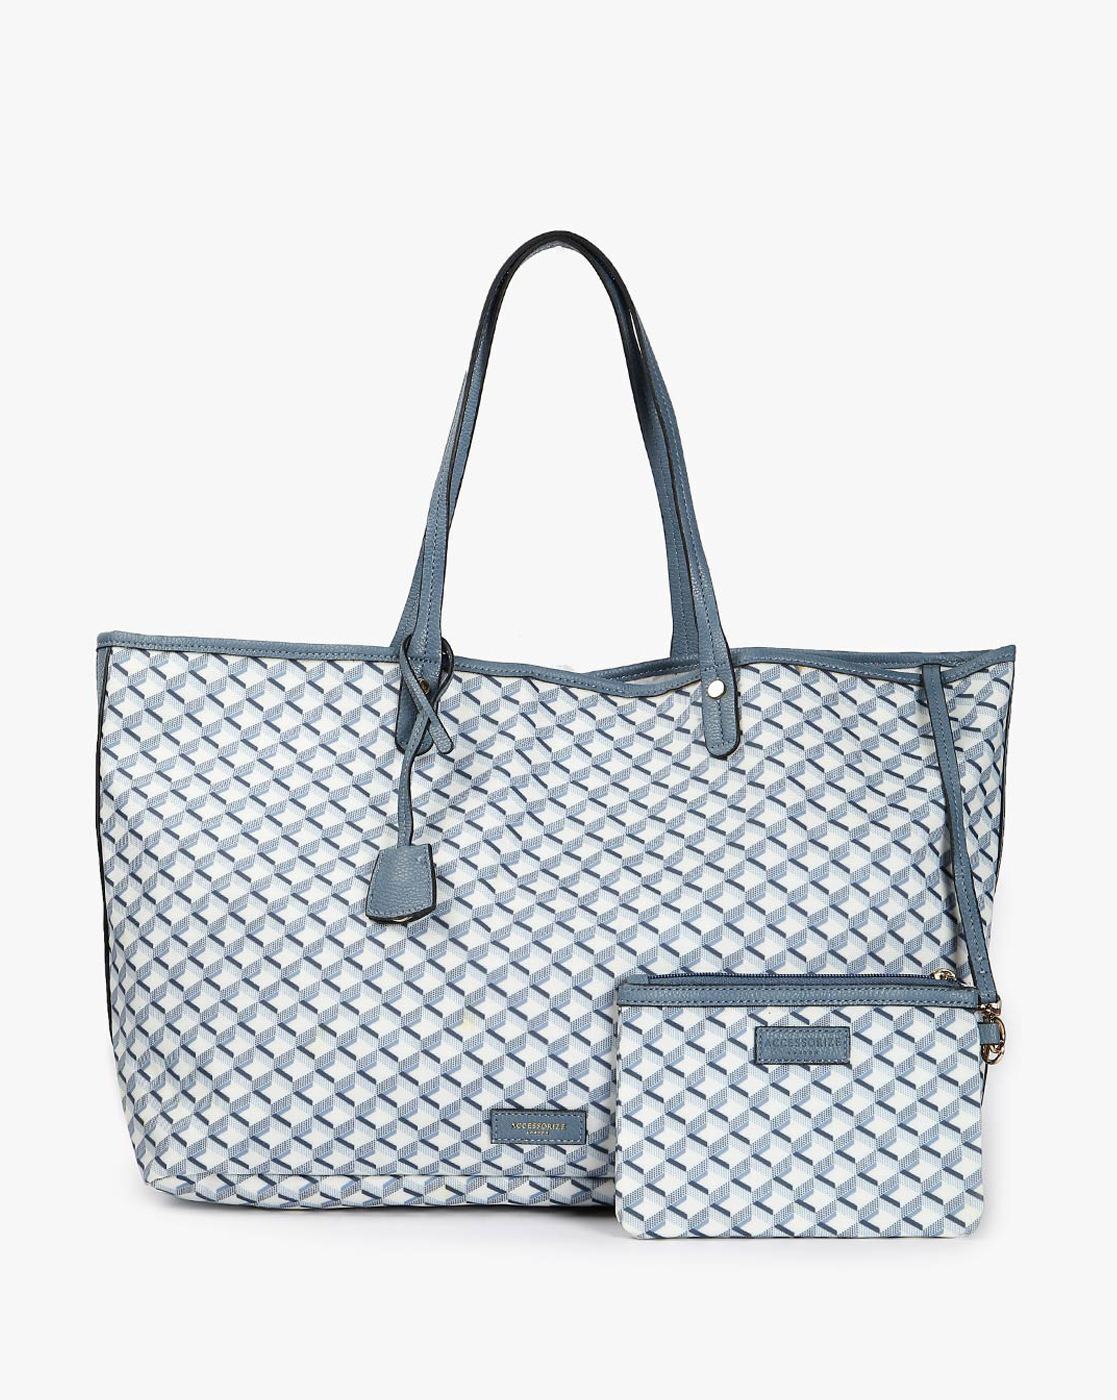 Women's Bags & Handbags | Crossbody Bags, Purses | Accessorize UK